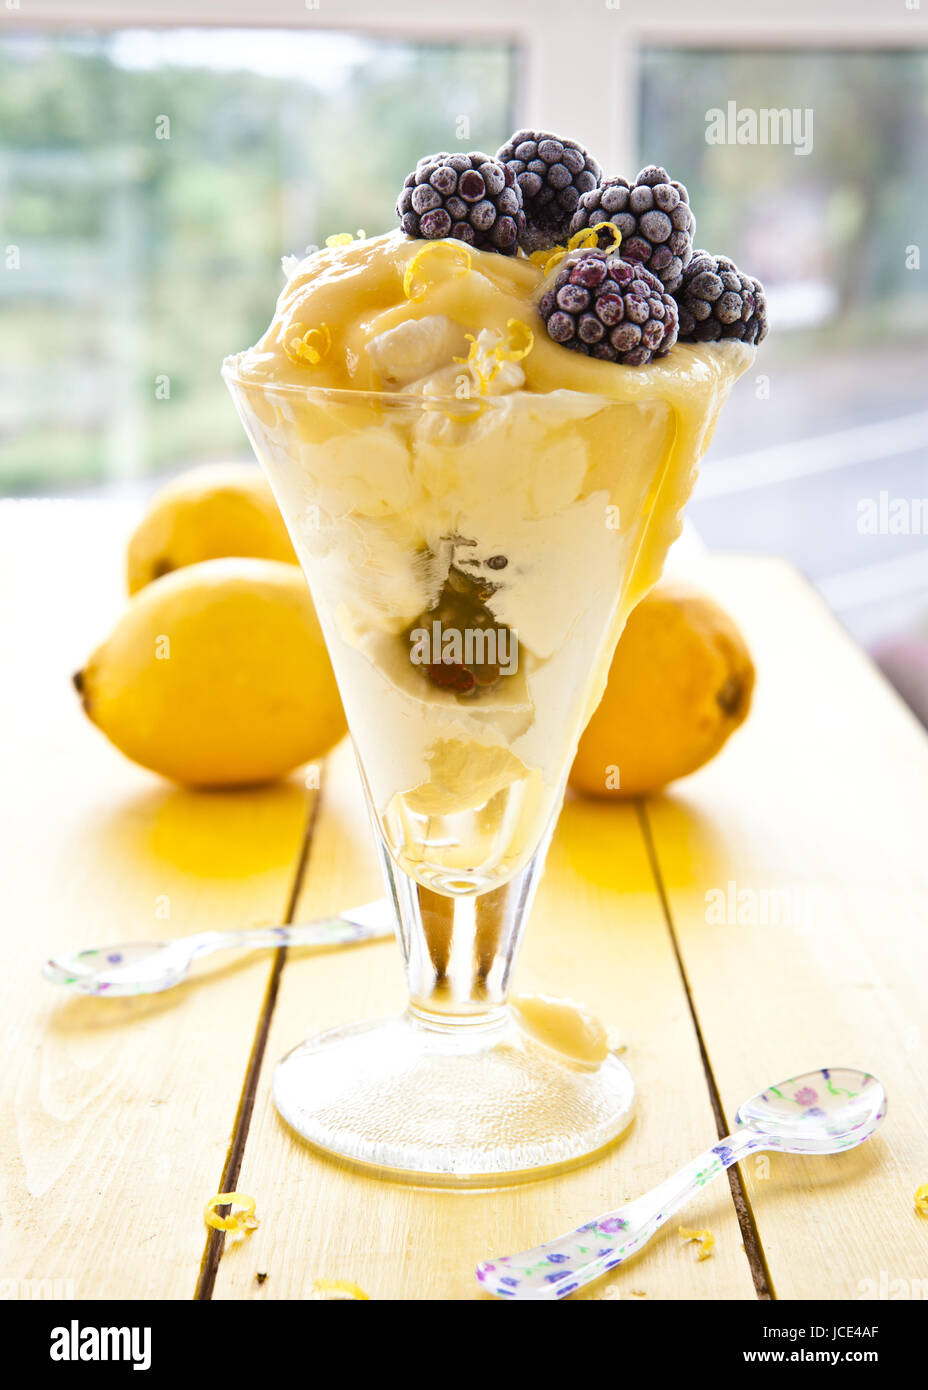 Il dessert mit Brombeeren und cagliata di limone Foto Stock